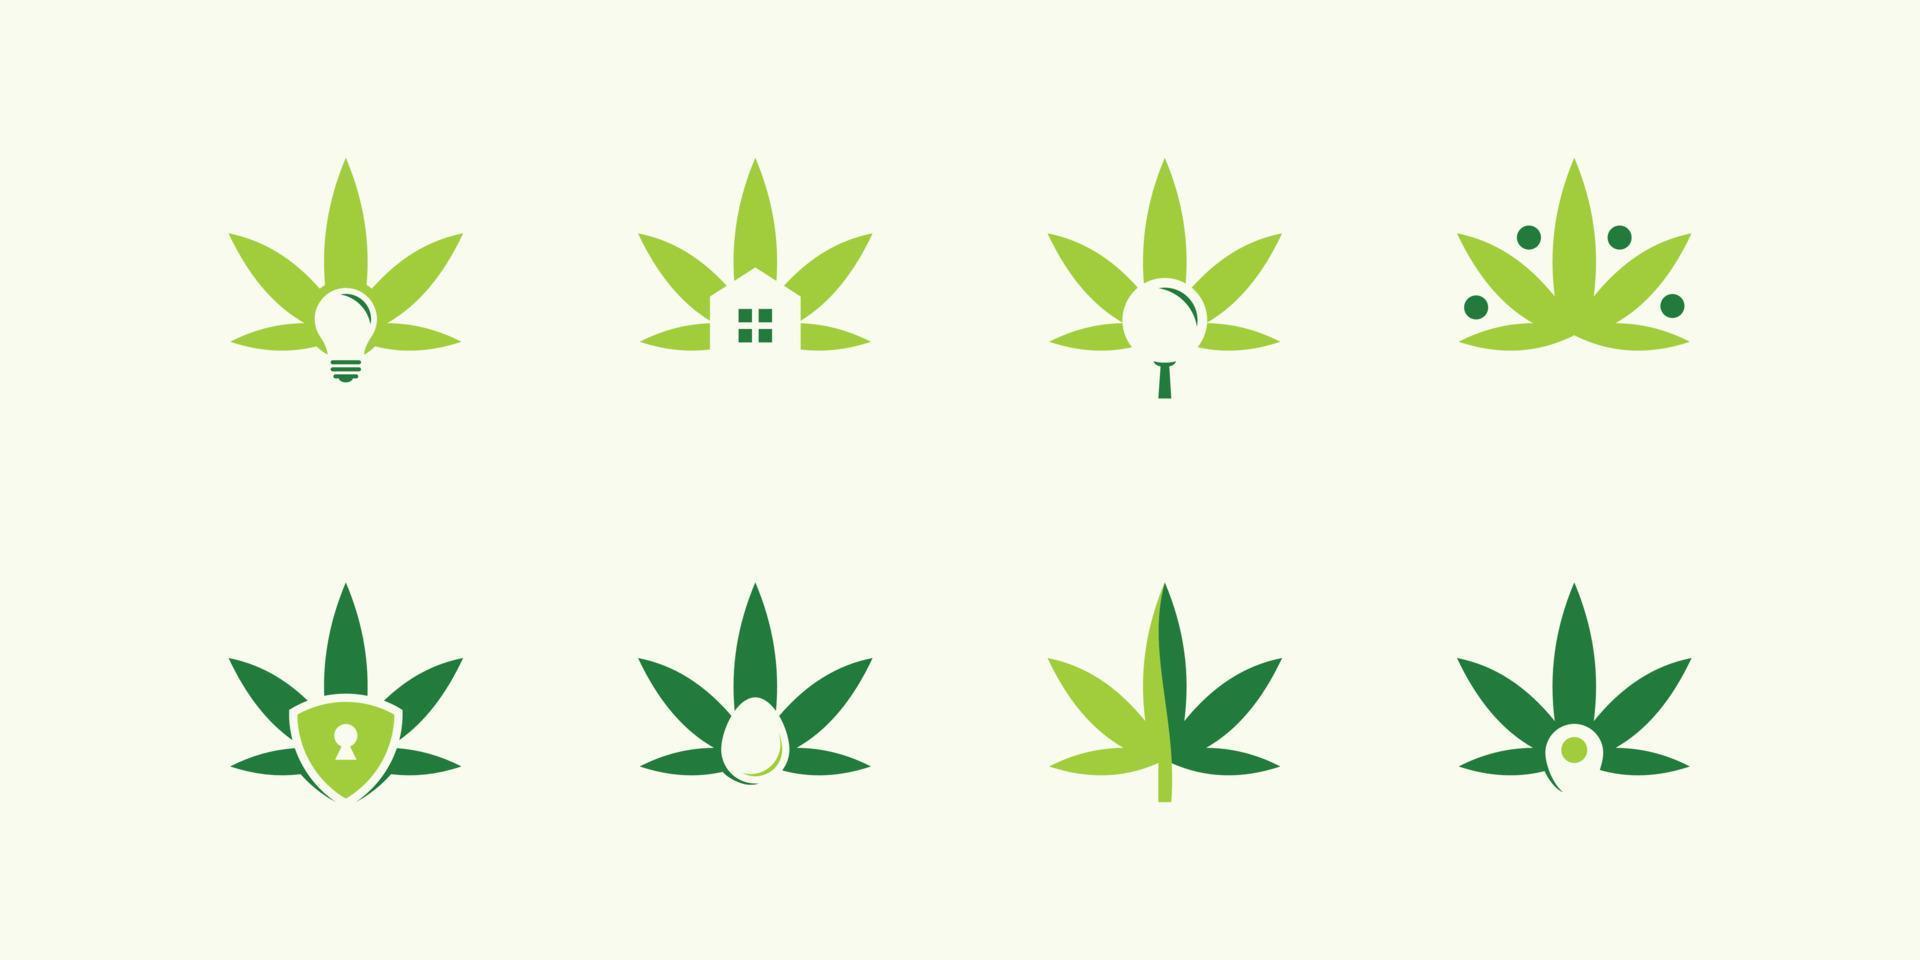 una raccolta di disegni ispirati al logo delle foglie di marijuana con varie combinazioni. vettore